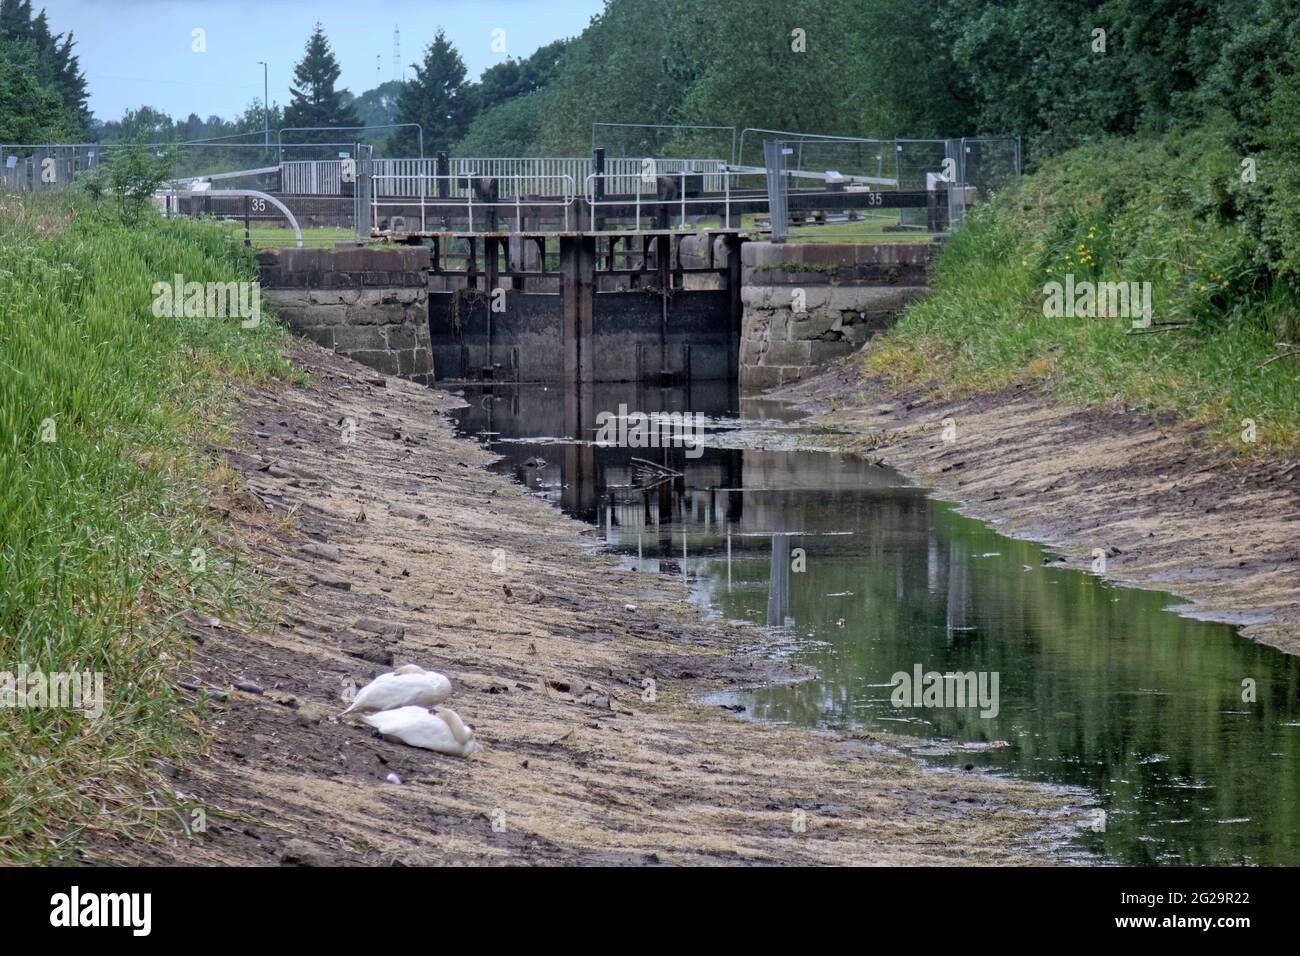 Glasgow, Scozia, Regno Unito, 9 giugno 2021. I canali Svotish hanno twittato "a causa di un problema di terze parti con il gasdotto Monkland che alimenta la rete idrica di ForthandClydeCanal, l'approvvigionamento idrico sul canale è attualmente basso. Tutta la navigazione lungo il corso d'acqua è attualmente sospesa". AZ confusa fauna selvatica e cracking canali bacini fornire una vista insolita per gli spettatori sul towpath.Copyright Gerard Ferry/Alamy Live News Foto Stock